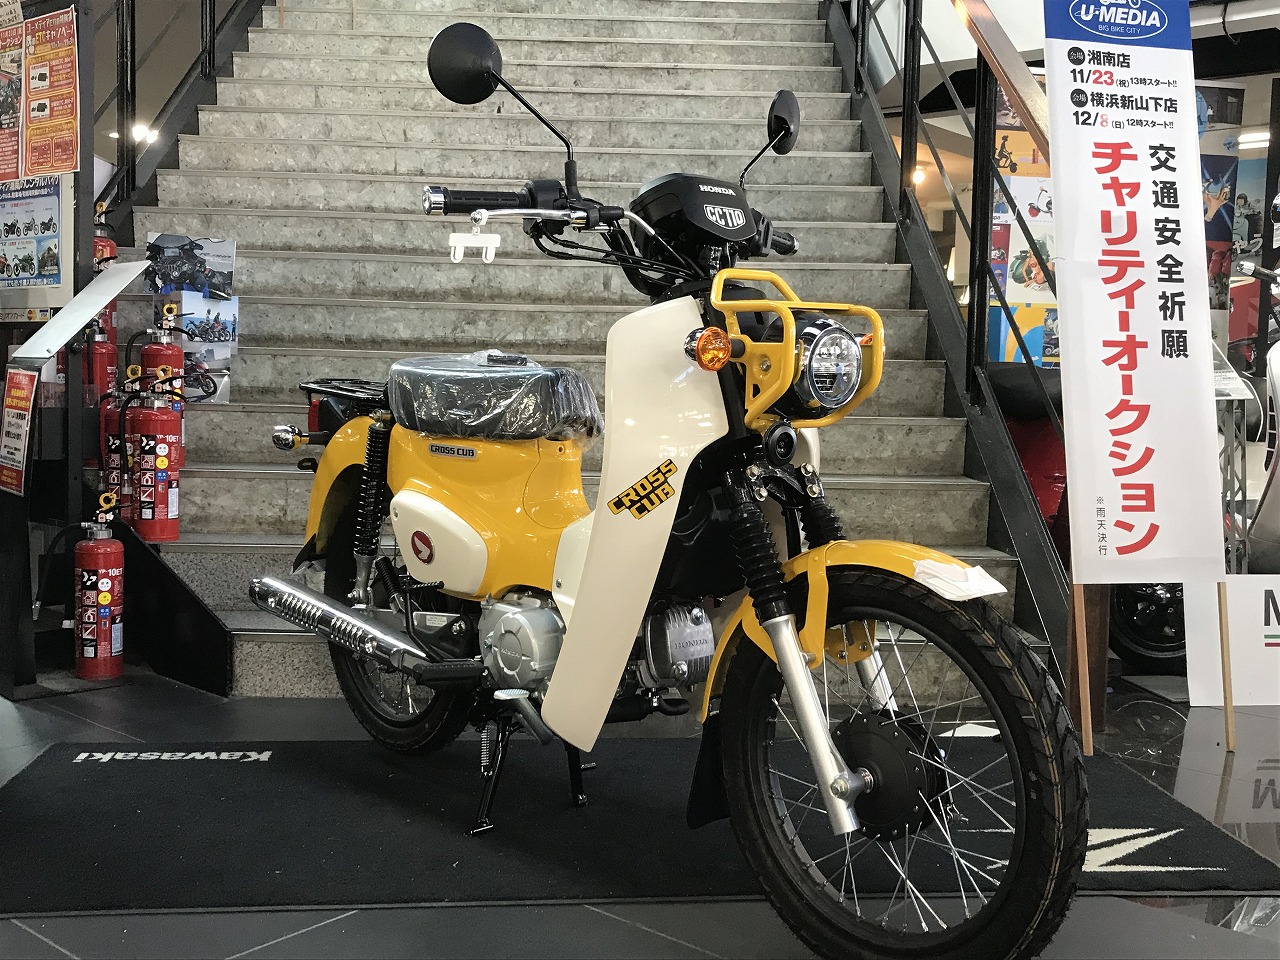 クロスカブレッグシールド第2弾 最新情報 U Media ユーメディア 中古バイク 新車バイク探しの決定版 神奈川 東京でバイク探すならユーメディア